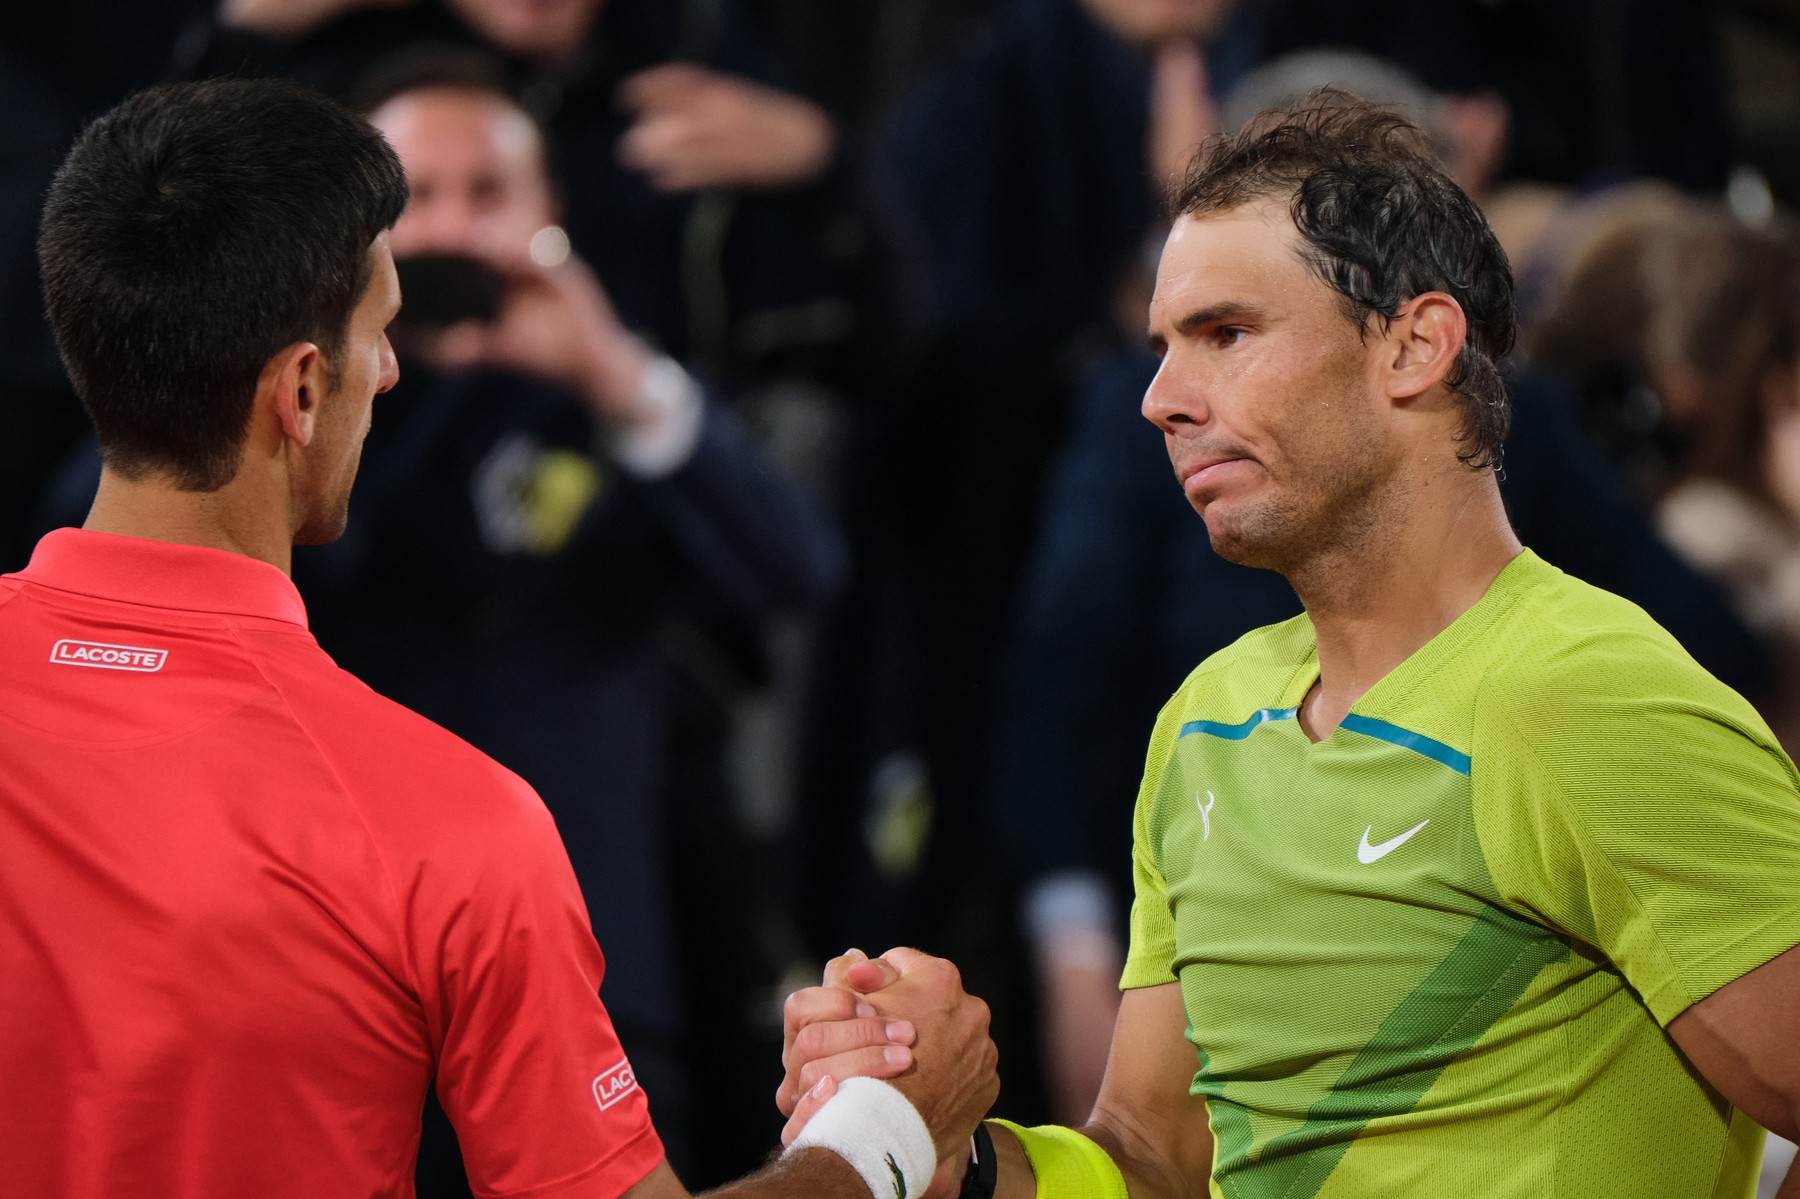  Novak Djokovic poslao poruku Rafaelu Nadalu dobro dosao 